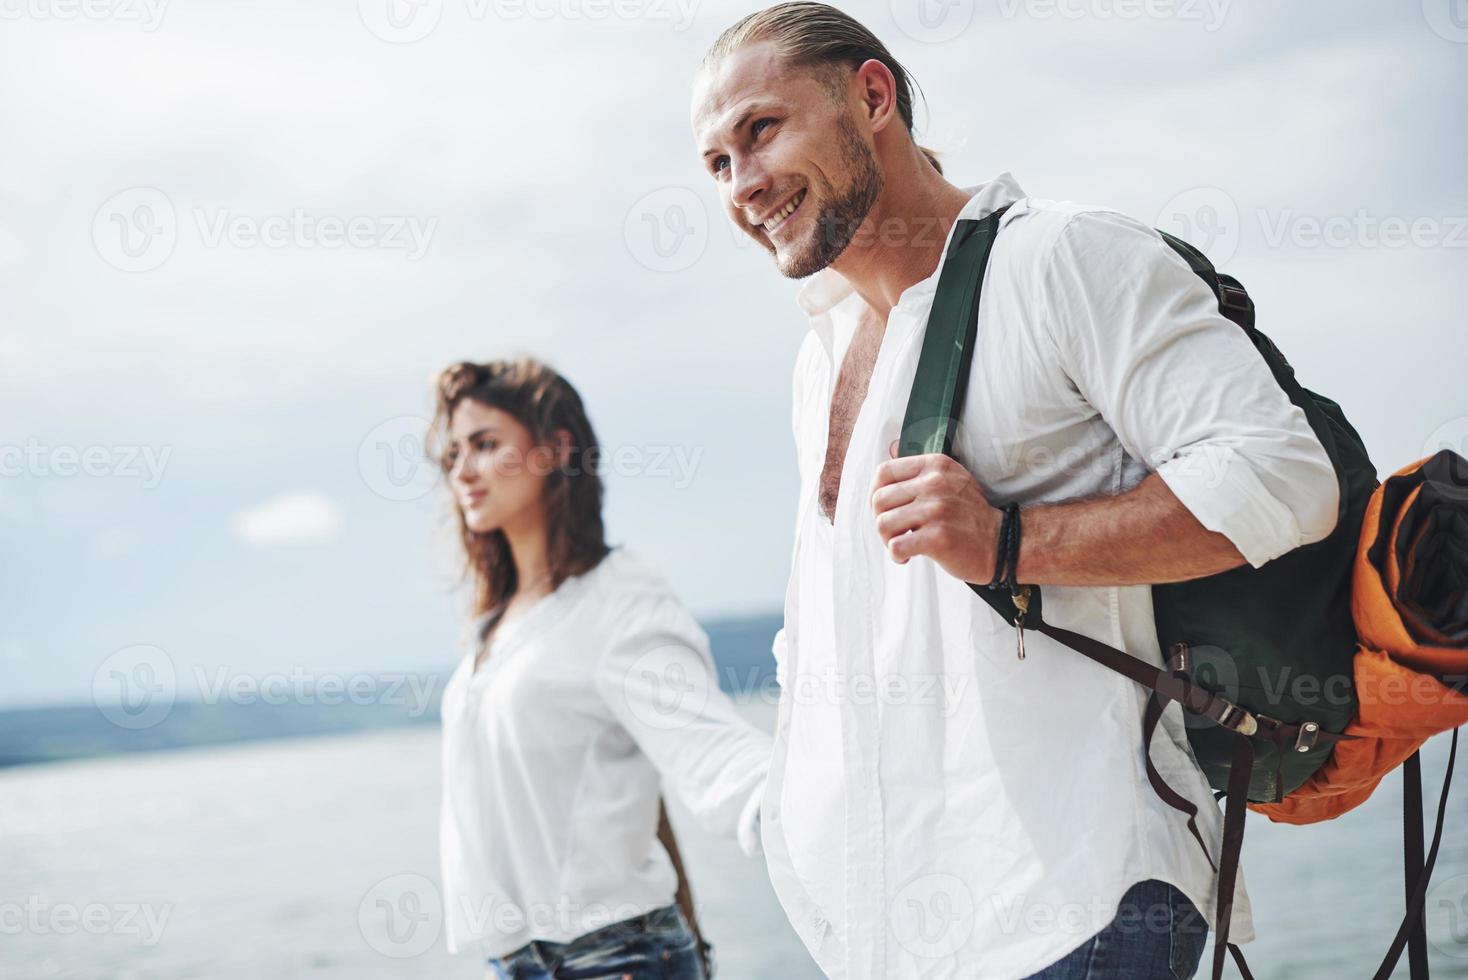 souriant et se sentant heureux. joyeuse promenade d'un couple charmant en plein air au fond du lac photo